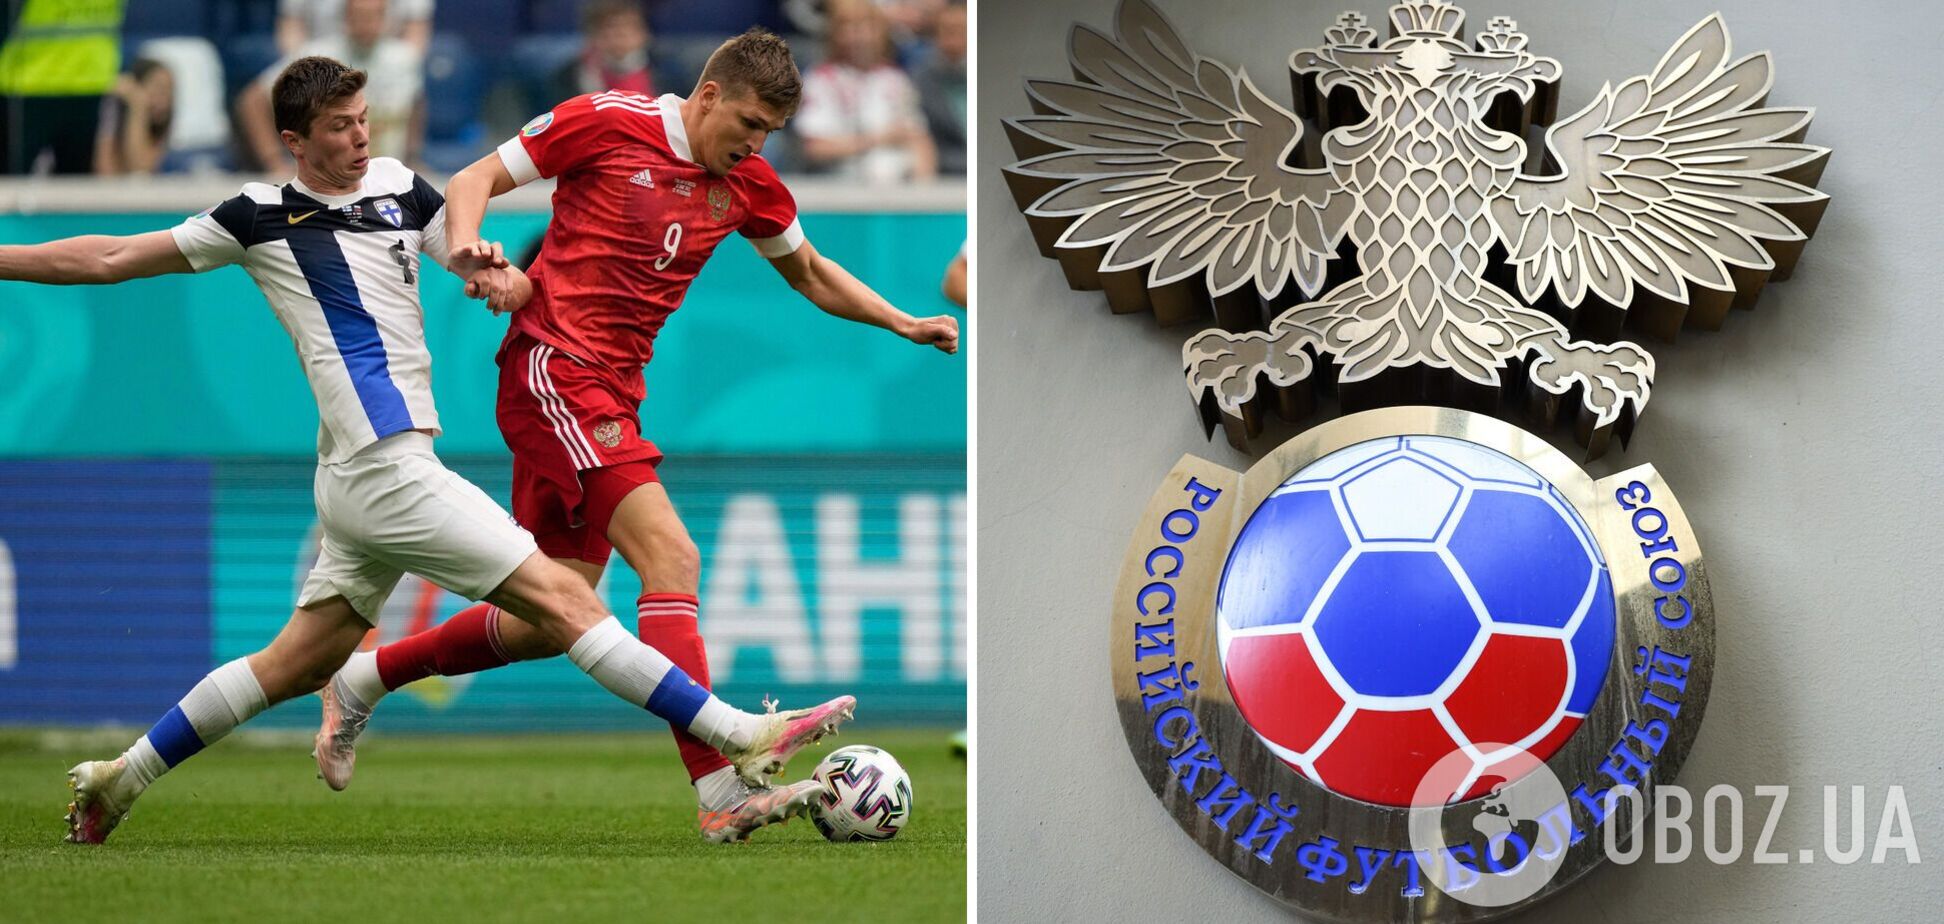 Не хотят играть: в России пожаловались на проблемы сборной и заявили о 'поэтапном возвращении' в международный футбол 